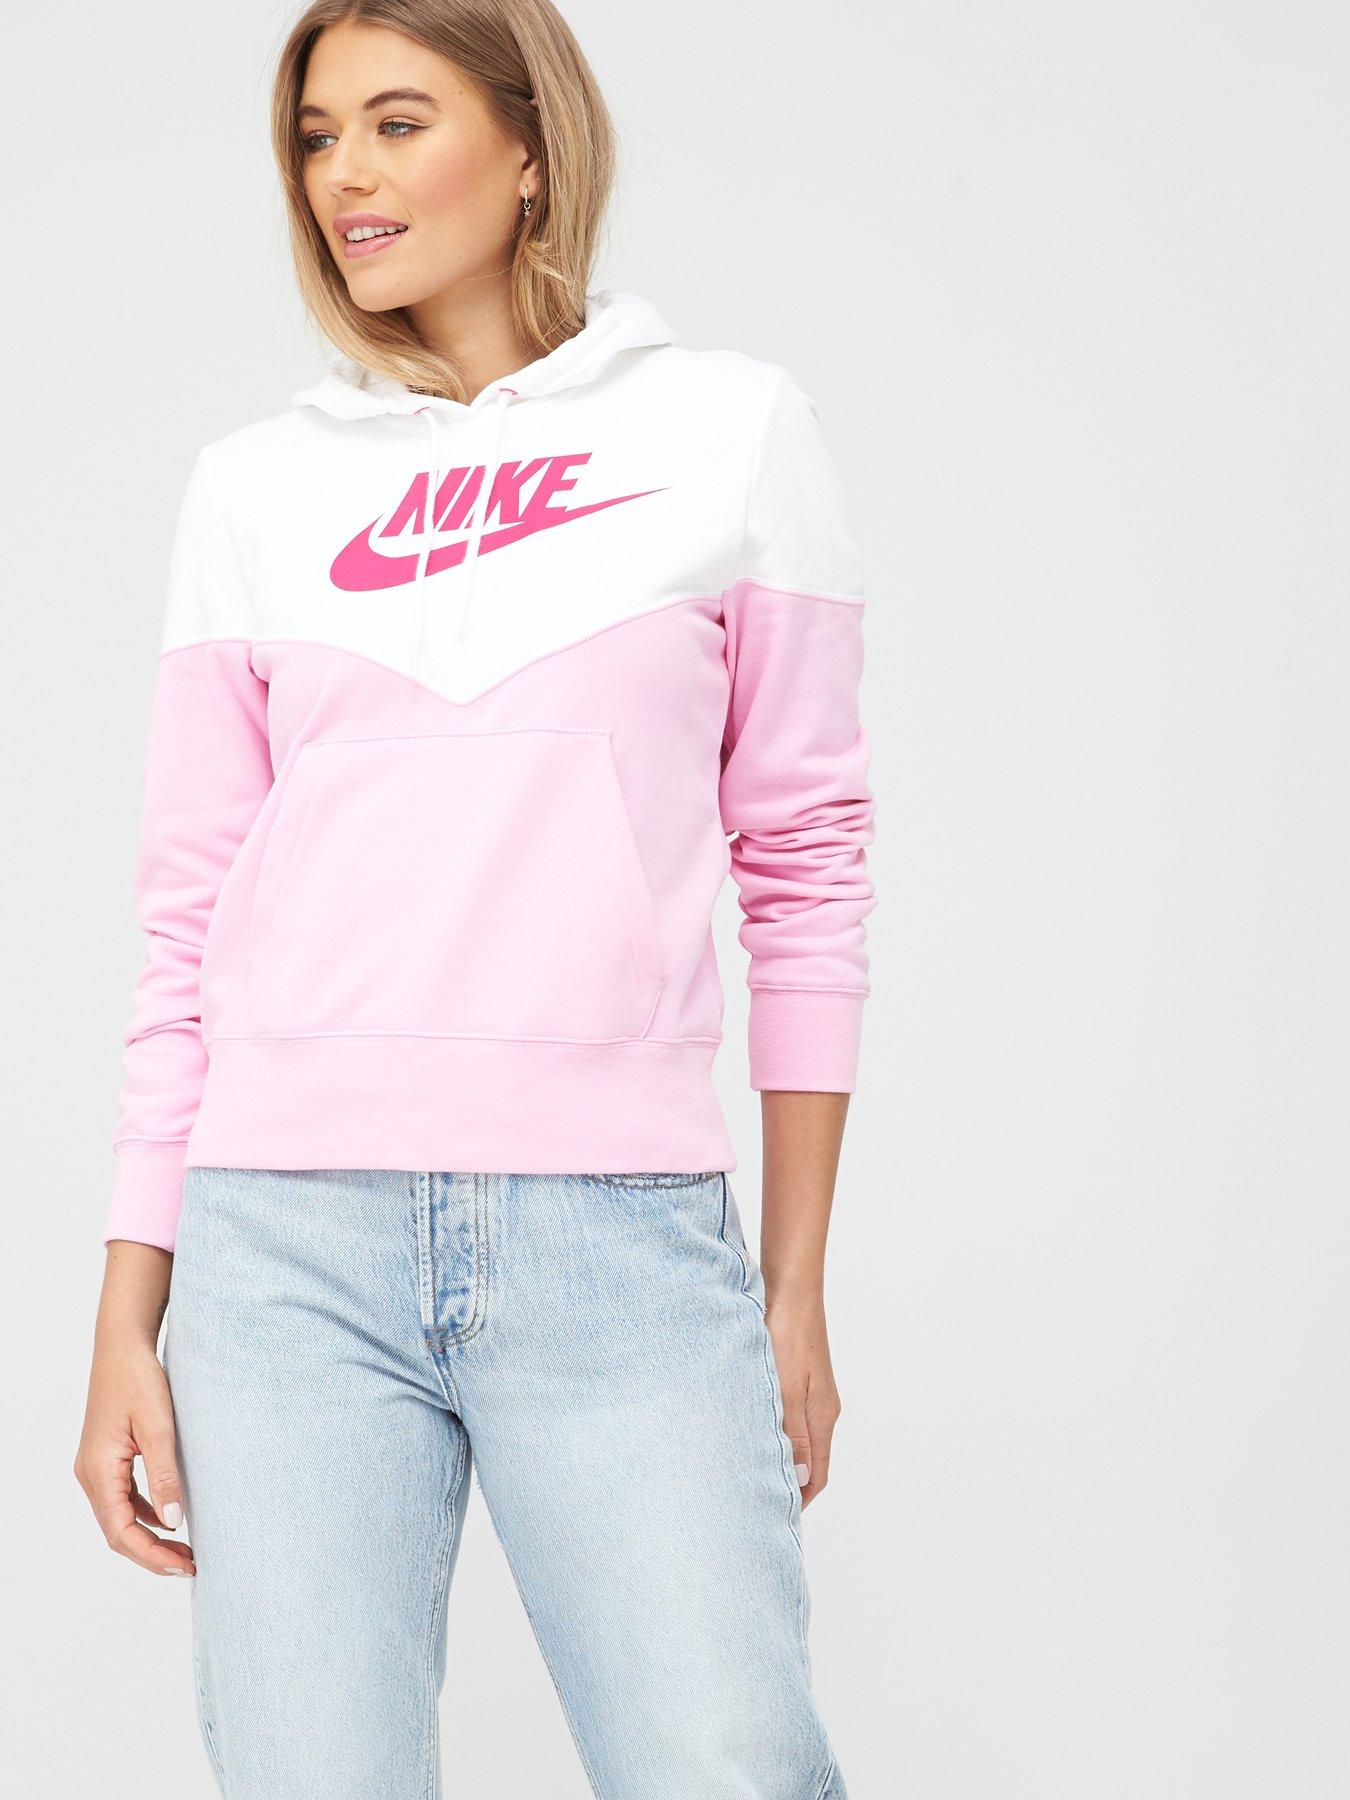 women's nike pink hoodie